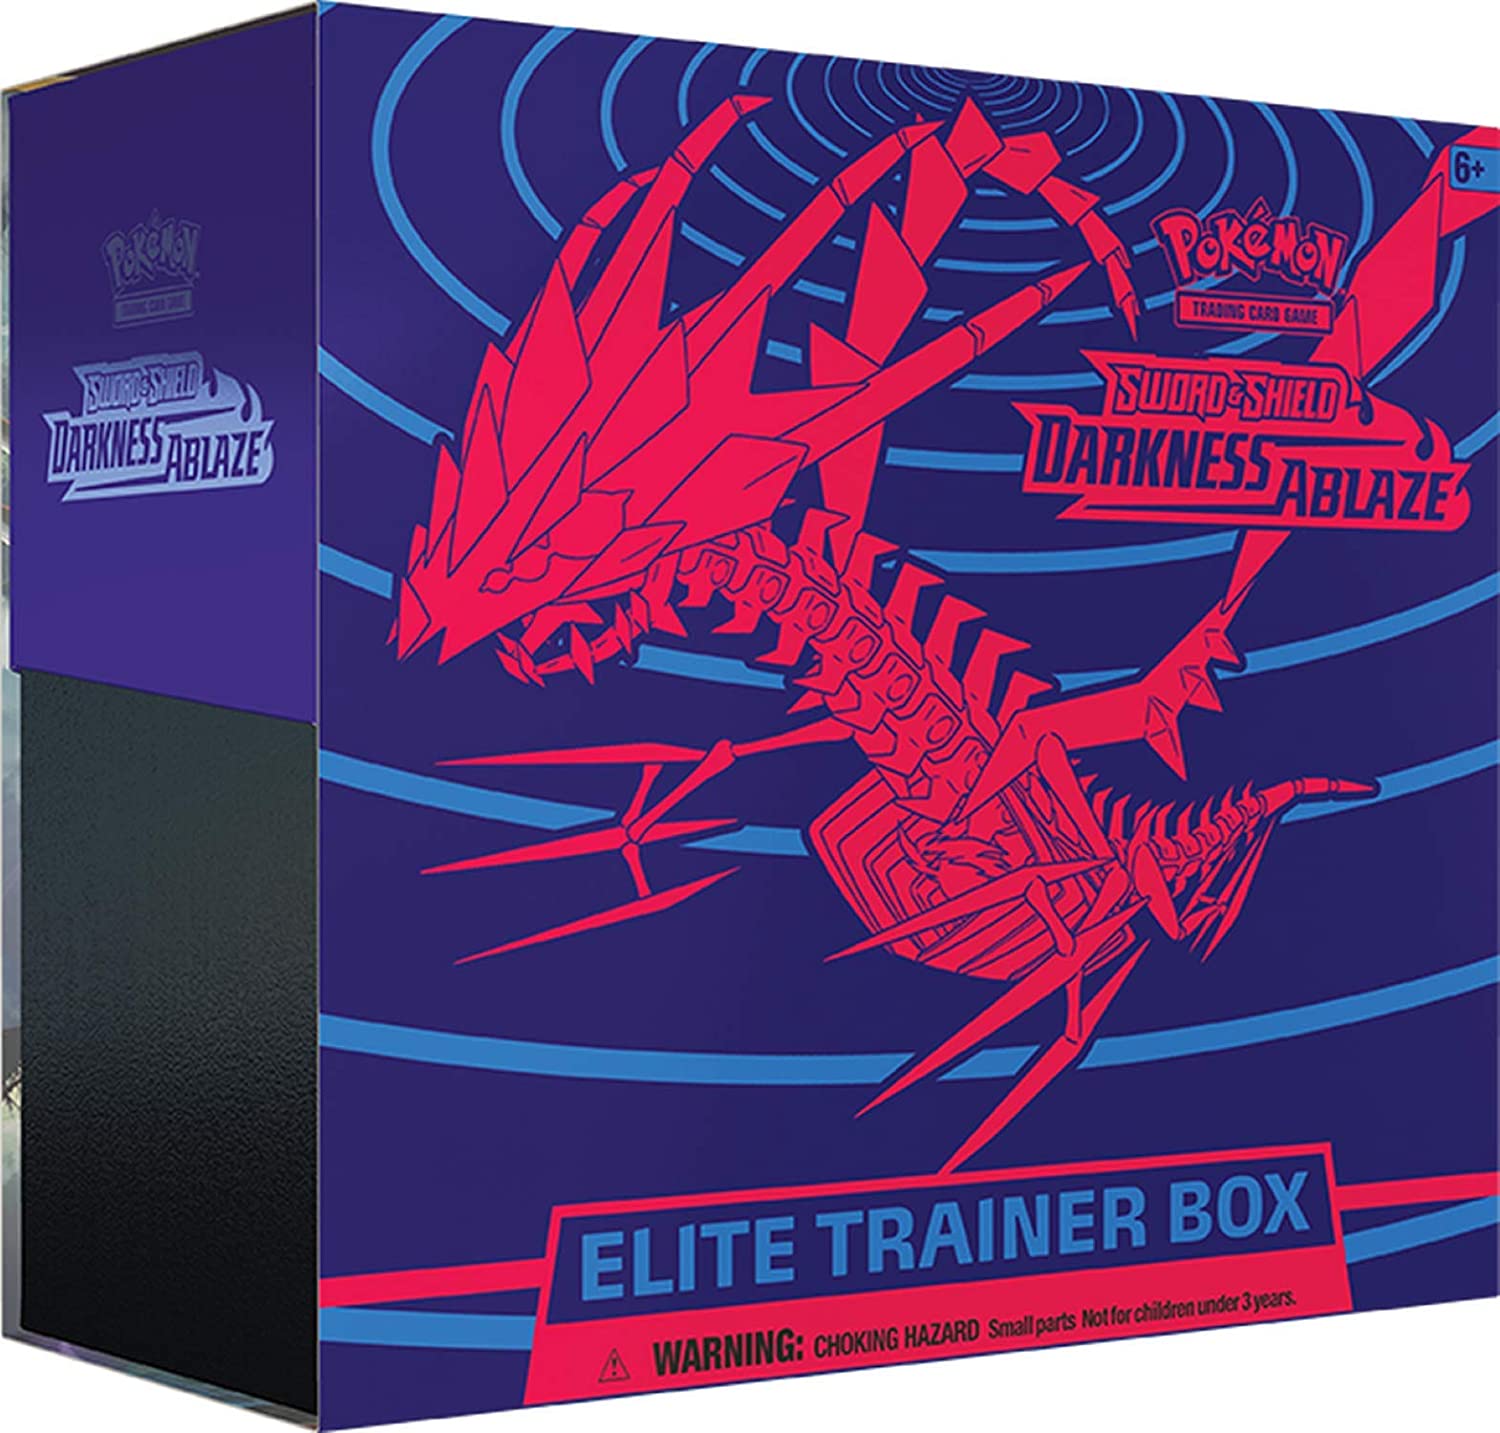 Pokémon Darkness Ablaze Elite Trainer Box | D20 Games